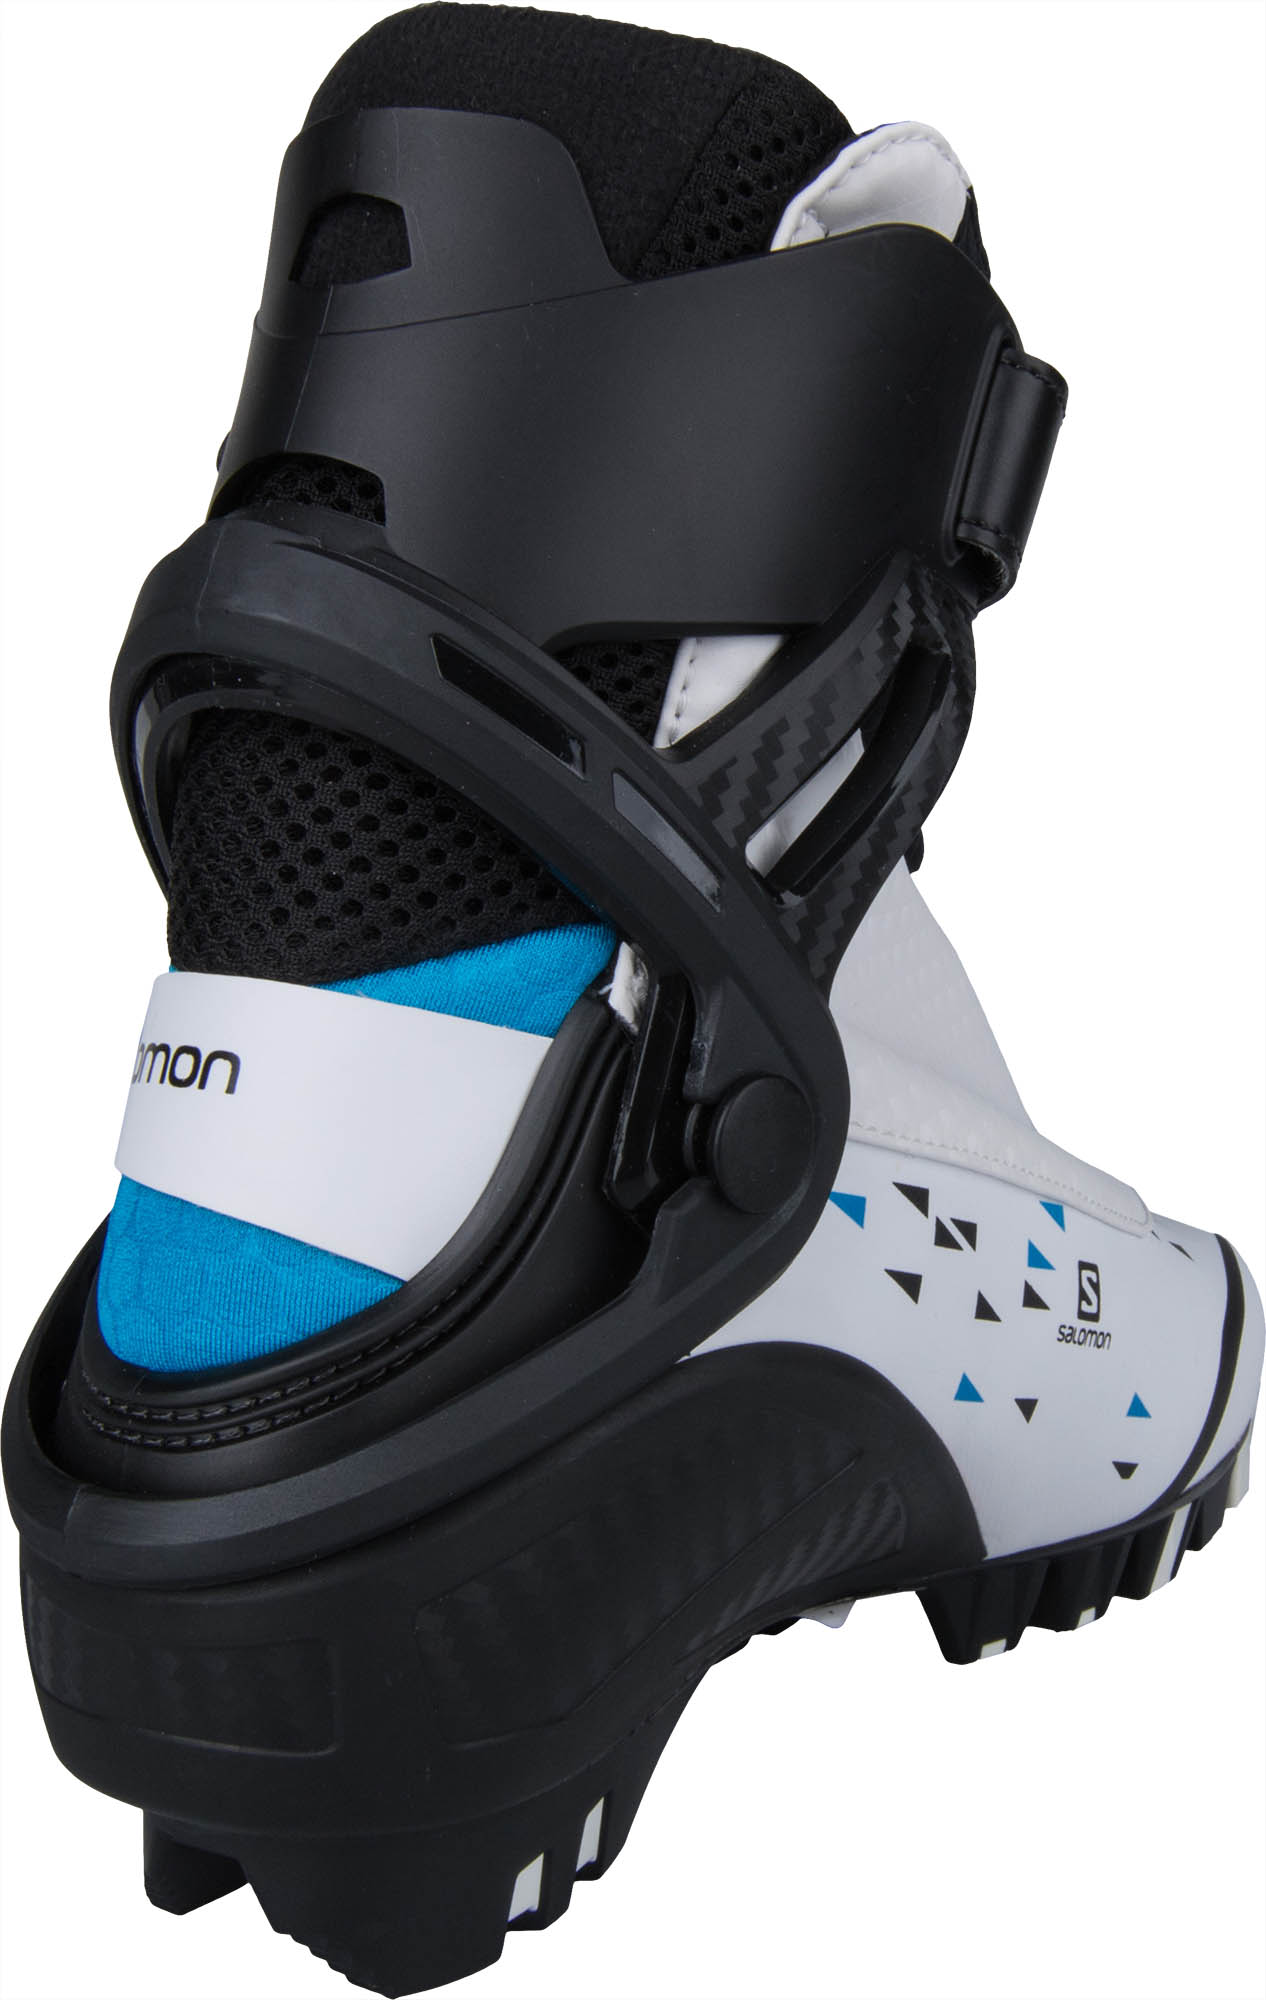 Women’s skating ski boots